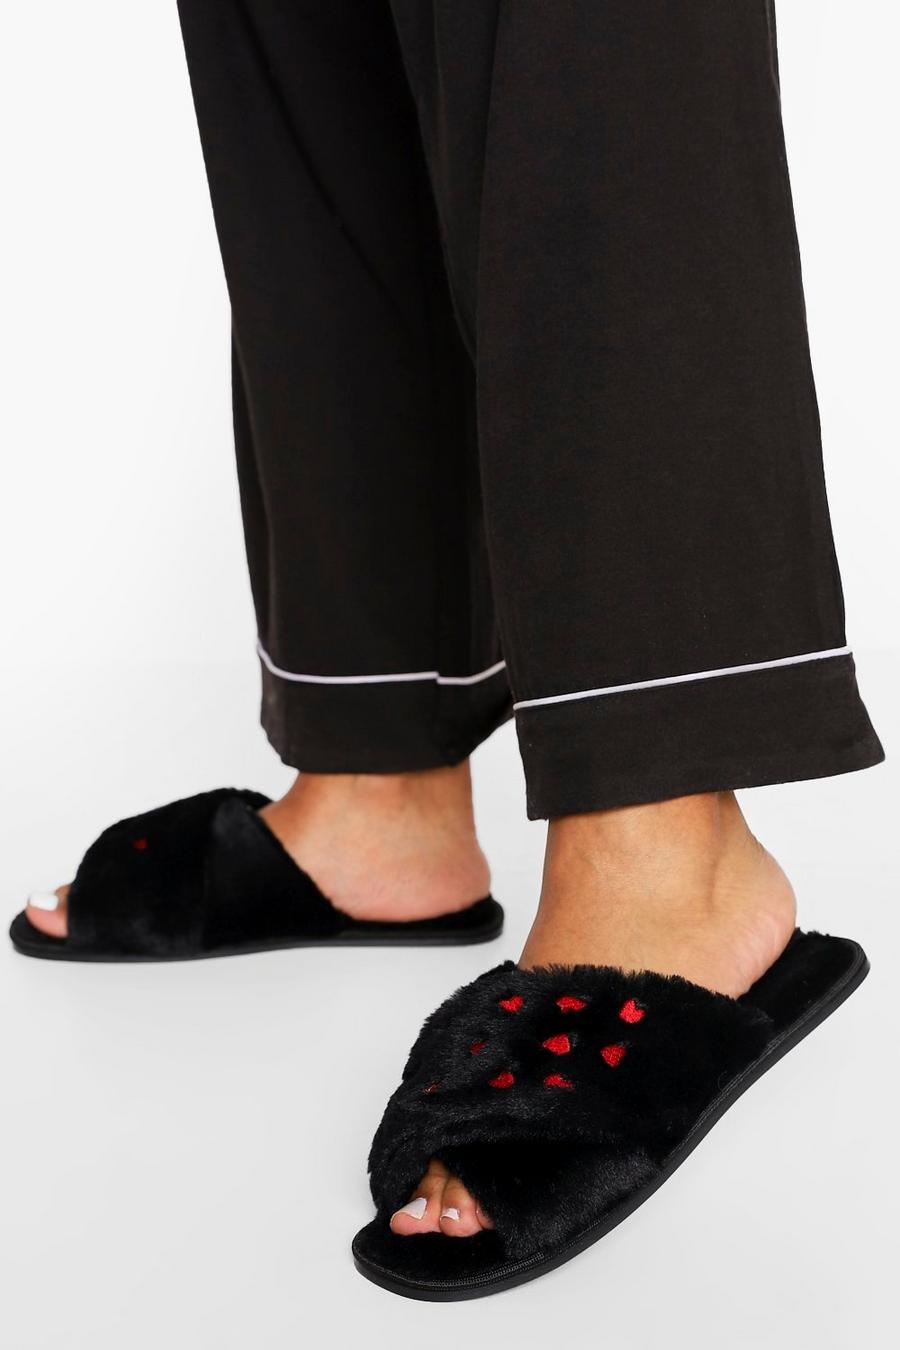 Pantofole con fascette incrociate e cuori, per San Valentino, Nero image number 1